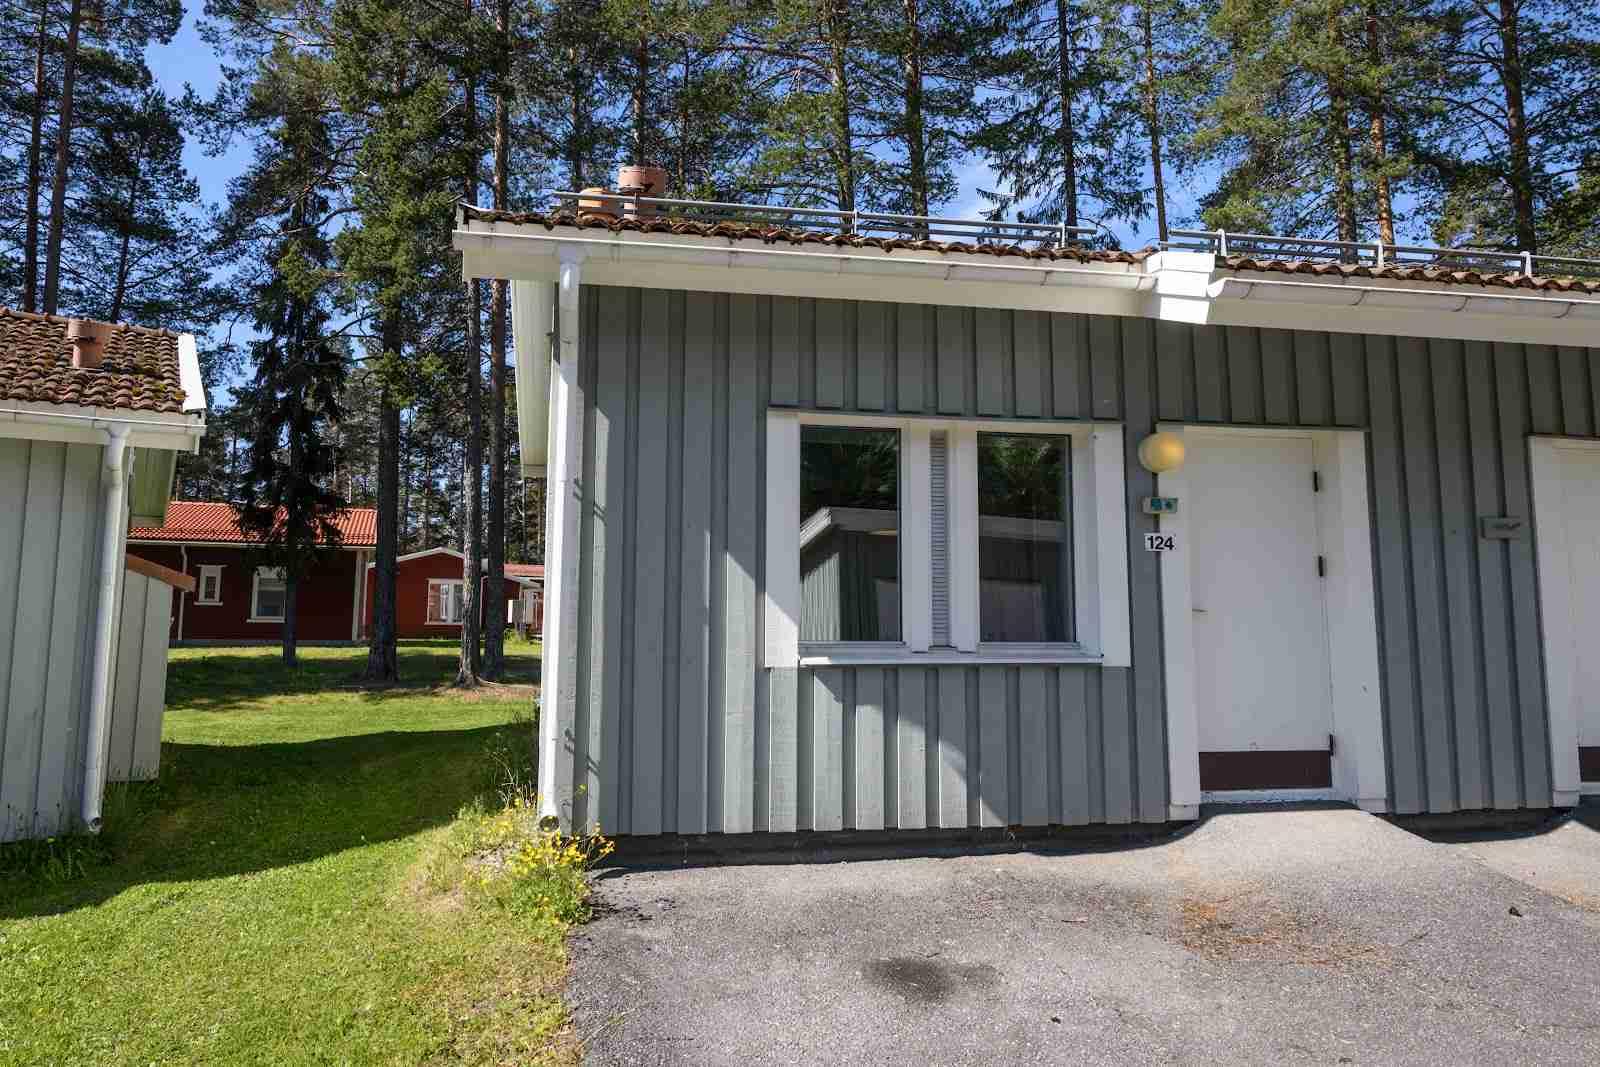 Östersunds Stugby & Camping, Östersund, Sweden